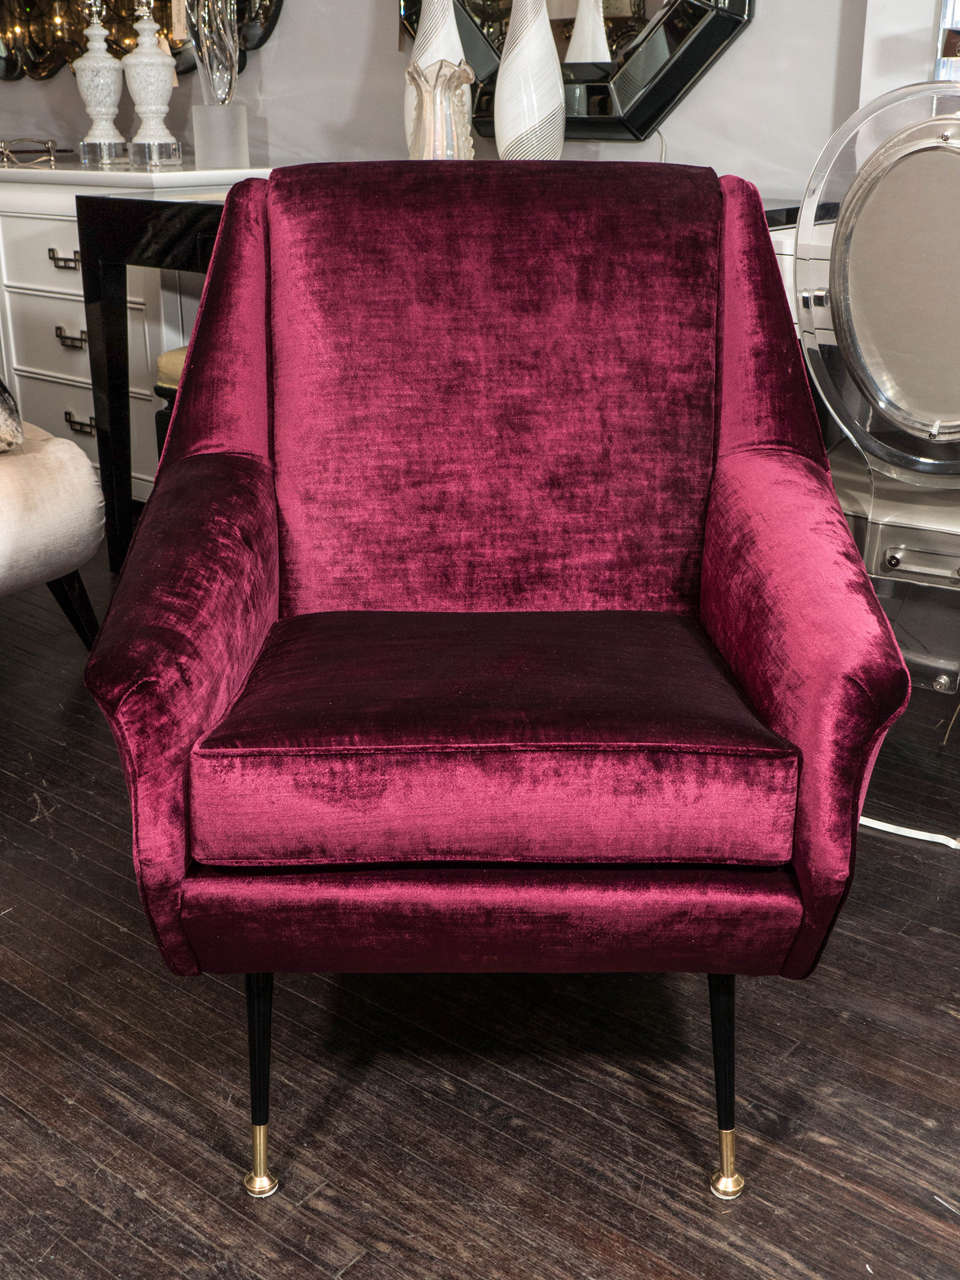 Pair of Italian Mid-Century Modern chairs upholstered in burgundy velvet.